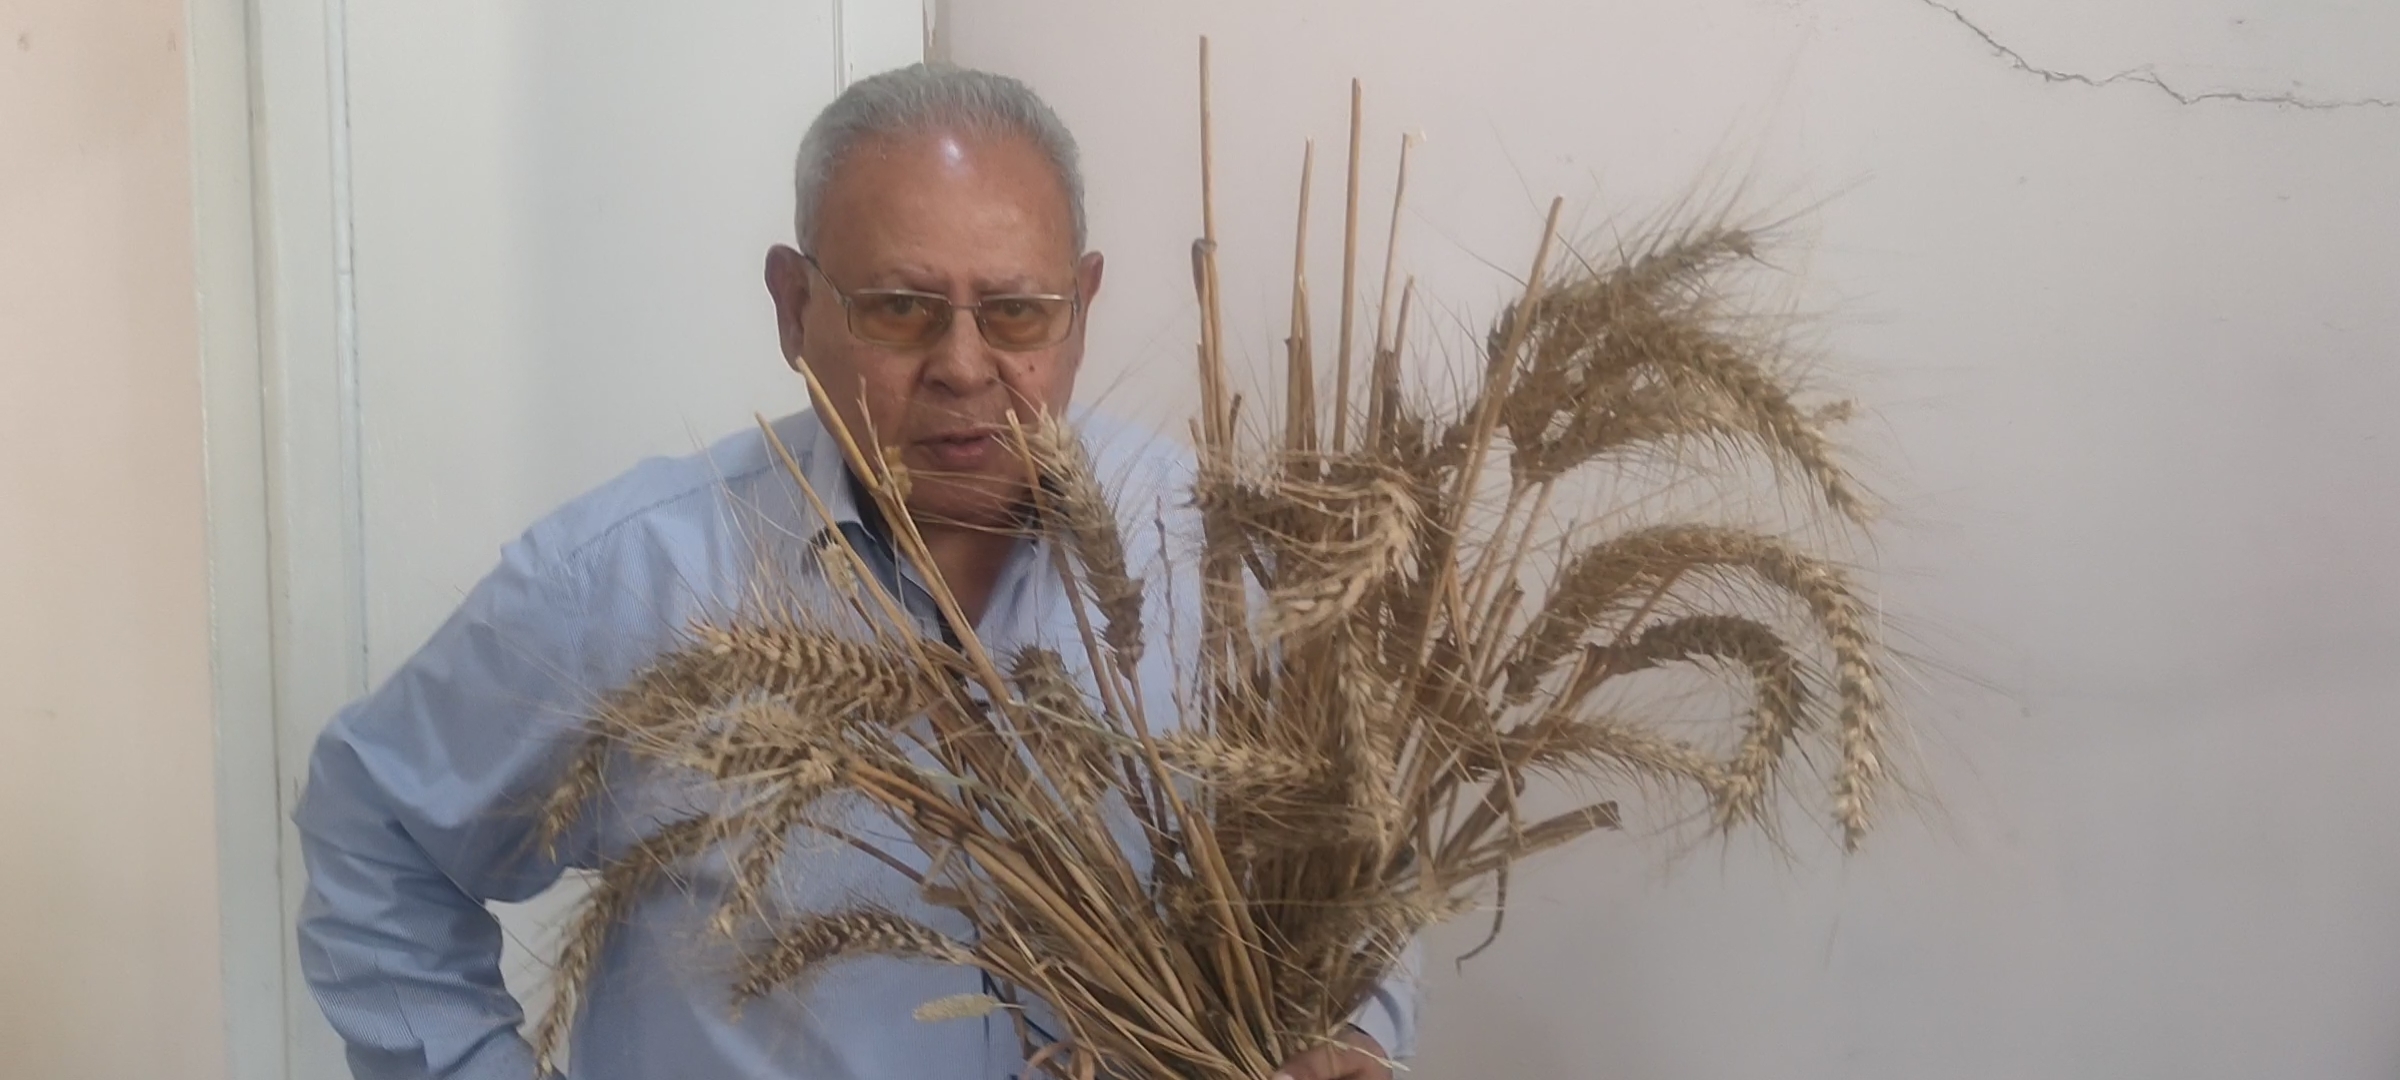 أستاذ زراعة الزقازيق ينجح في استباط طفرات من القمح مقاومة عالية للملوحة (3)